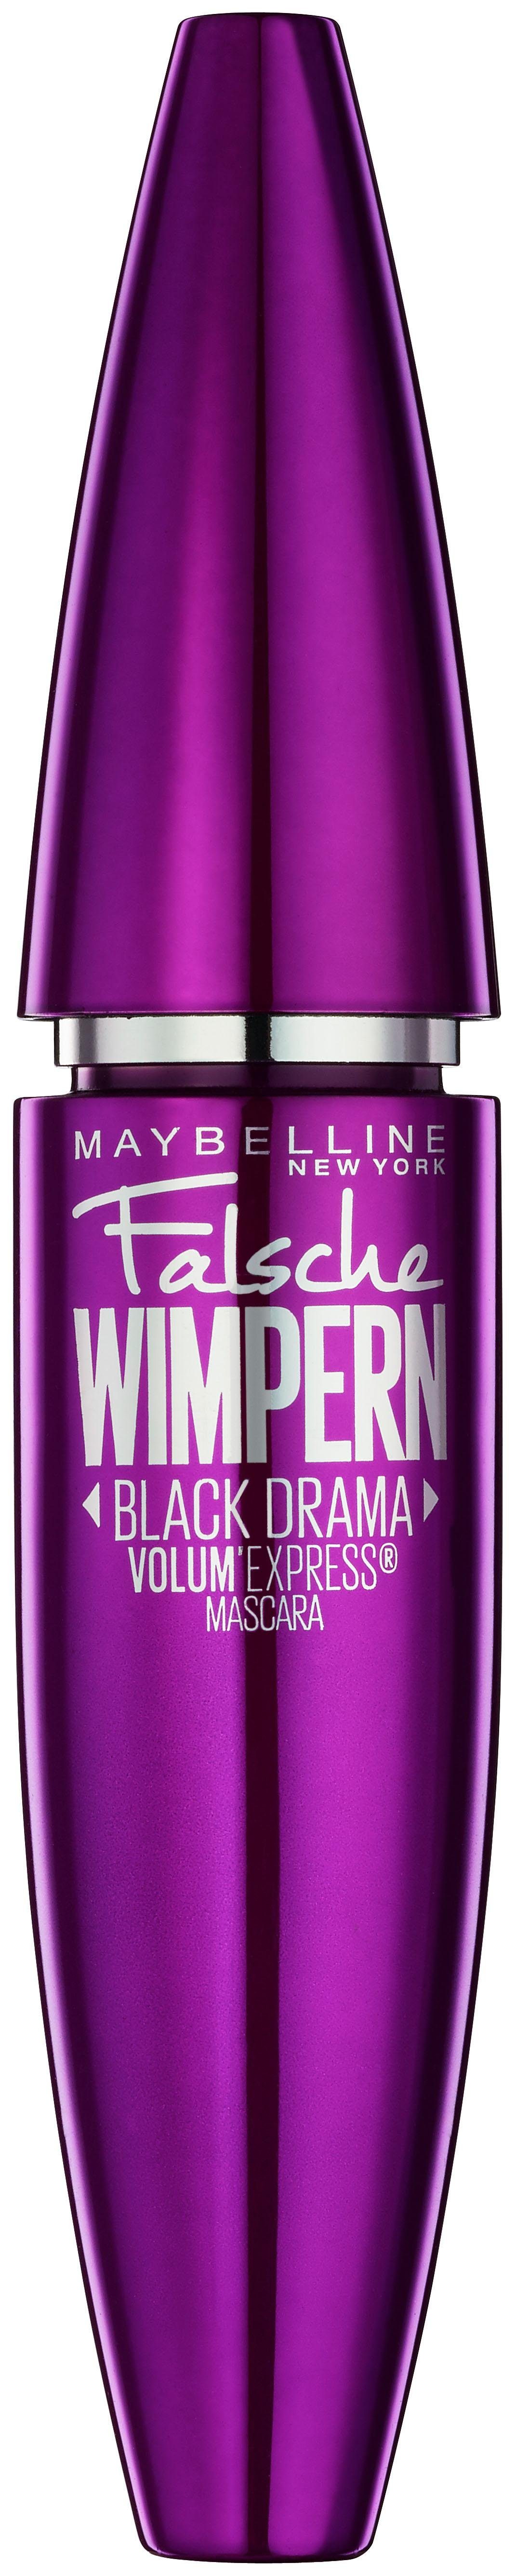 MAYBELLINE Black Drama, Wimpern Mascara NEW Falsche Express YORK Löffelbürste Patentierte Volum'